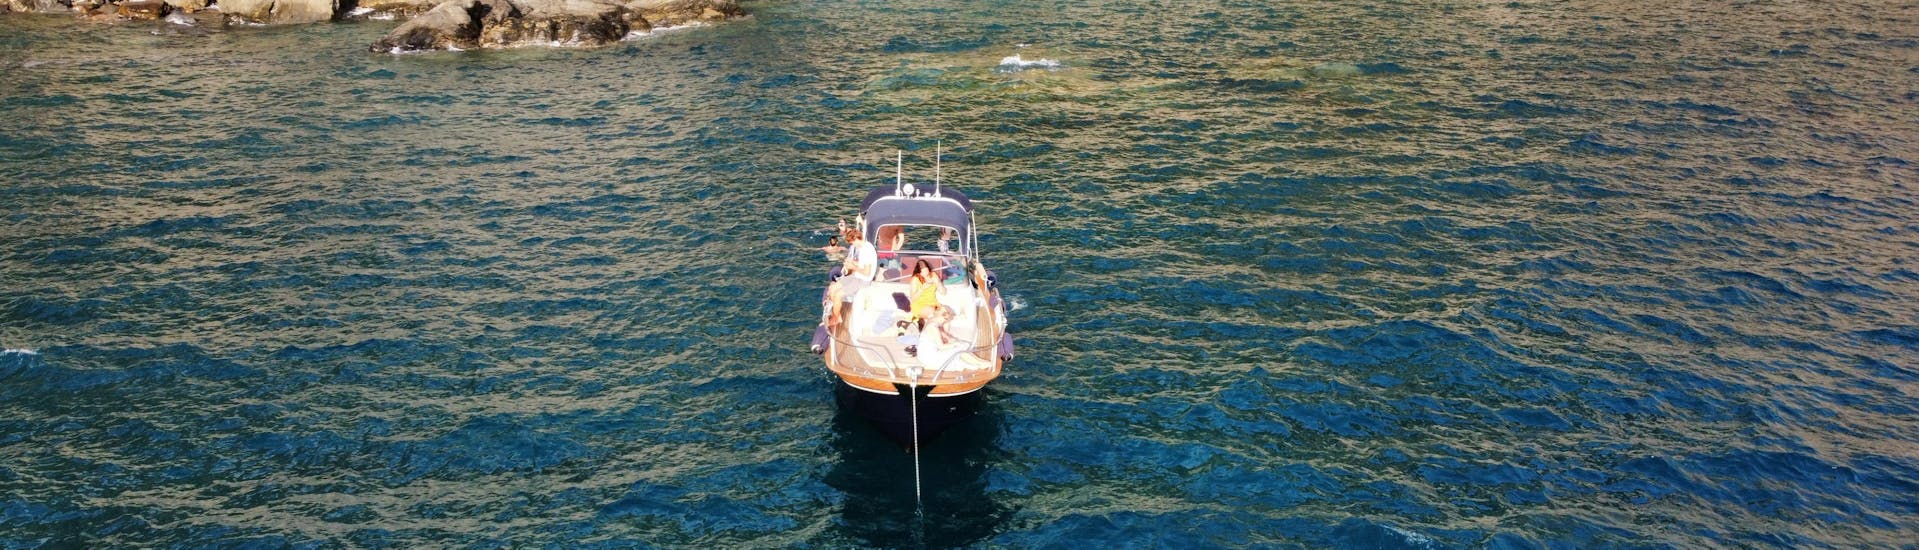 Private Boat Trip from Levanto to Cinque Terre & Porto Venere with Lunch.